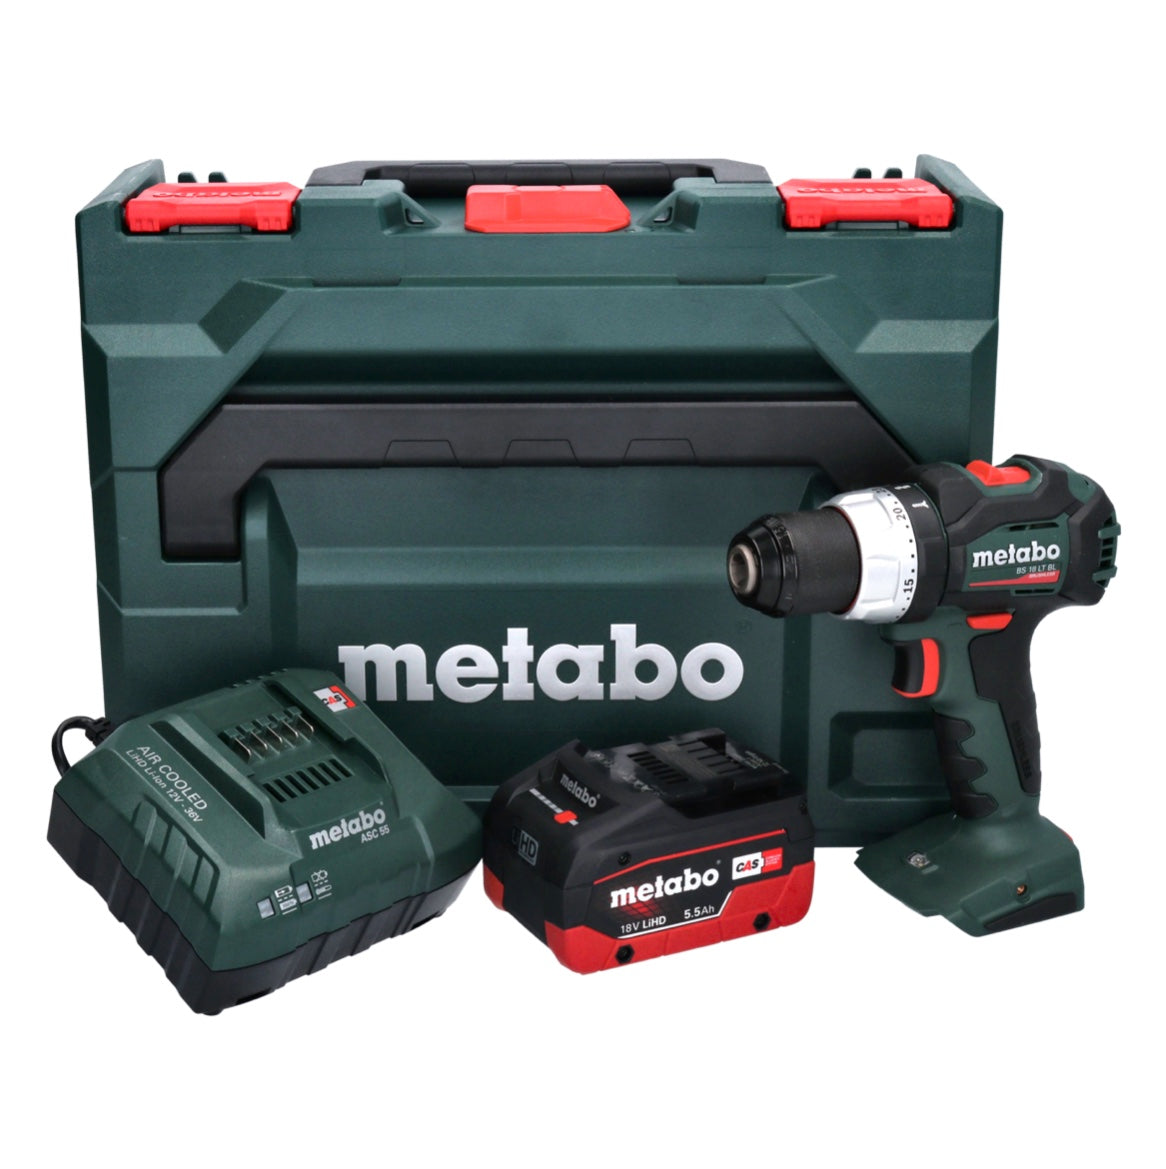 Metabo BS 18 LT BL perceuse-visseuse sans fil 18 V 75 Nm sans balais + 1x batterie 5,5 Ah + chargeur + métaBOX